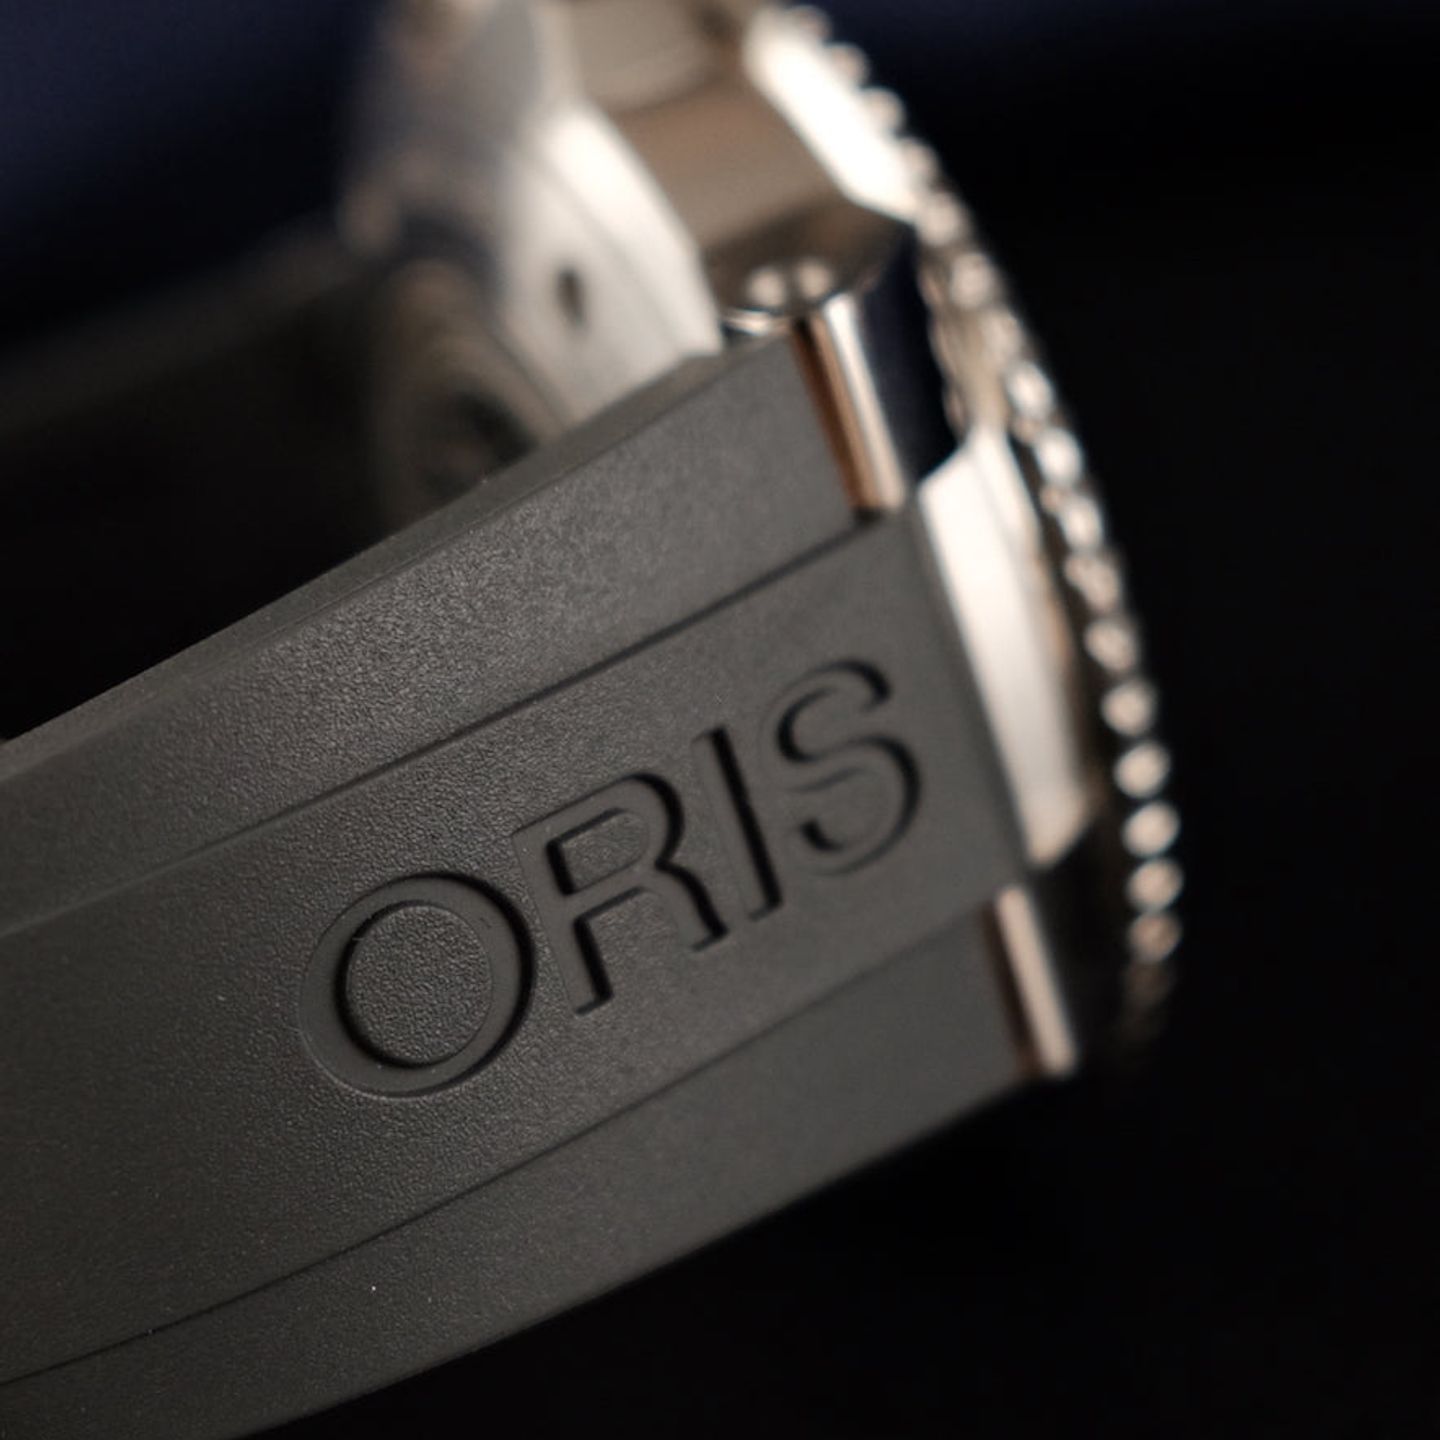 Oris Aquis 01 761 7765 4185-Set (2021) - Blauw wijzerplaat 44mm Staal (3/8)